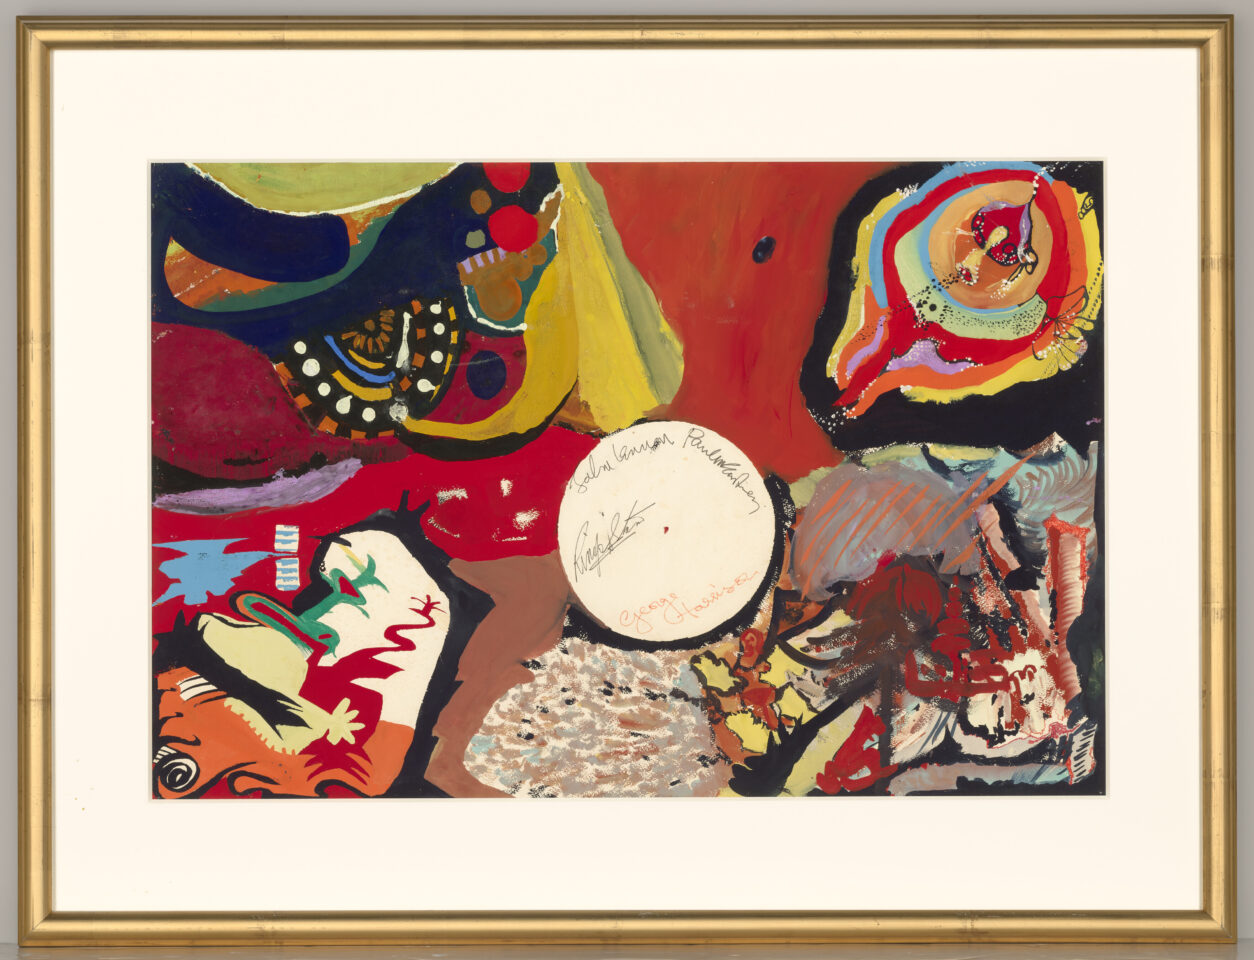 Das psychedelische Gemälde „Images of a Woman“ der Beatles wird bei Christie's für über 1.7 Millionen US-Dollar versteigert